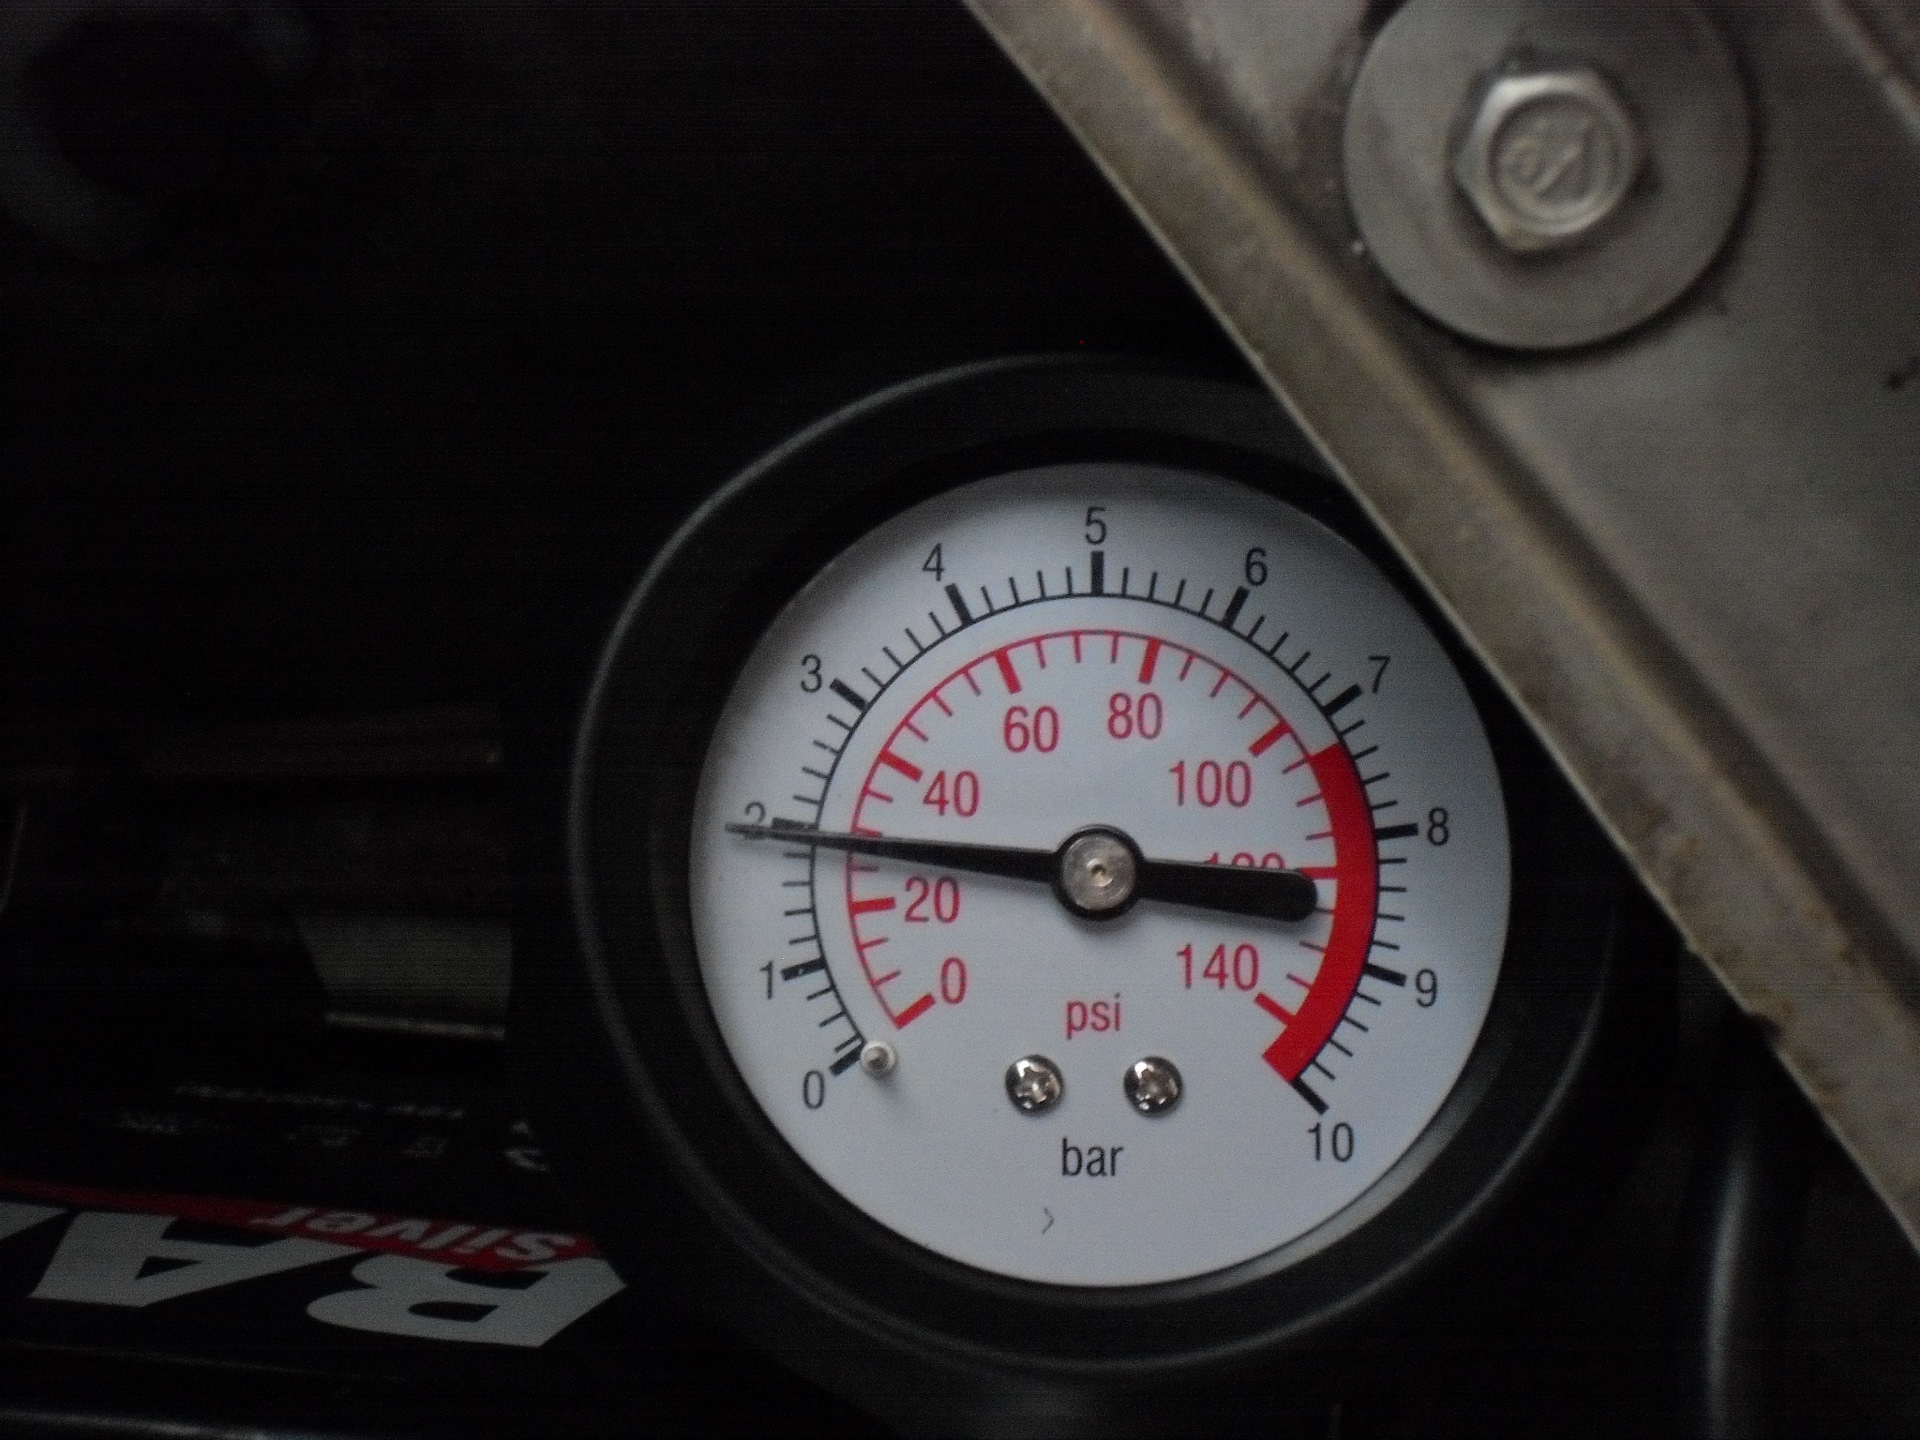 Gsf250 Bandit "давление масла в двигателе". Давление масла в ДВС 160 бар. Одометр давление масла. В чем измеряется давление масла в двигателе. Горит давление масла на прогретом